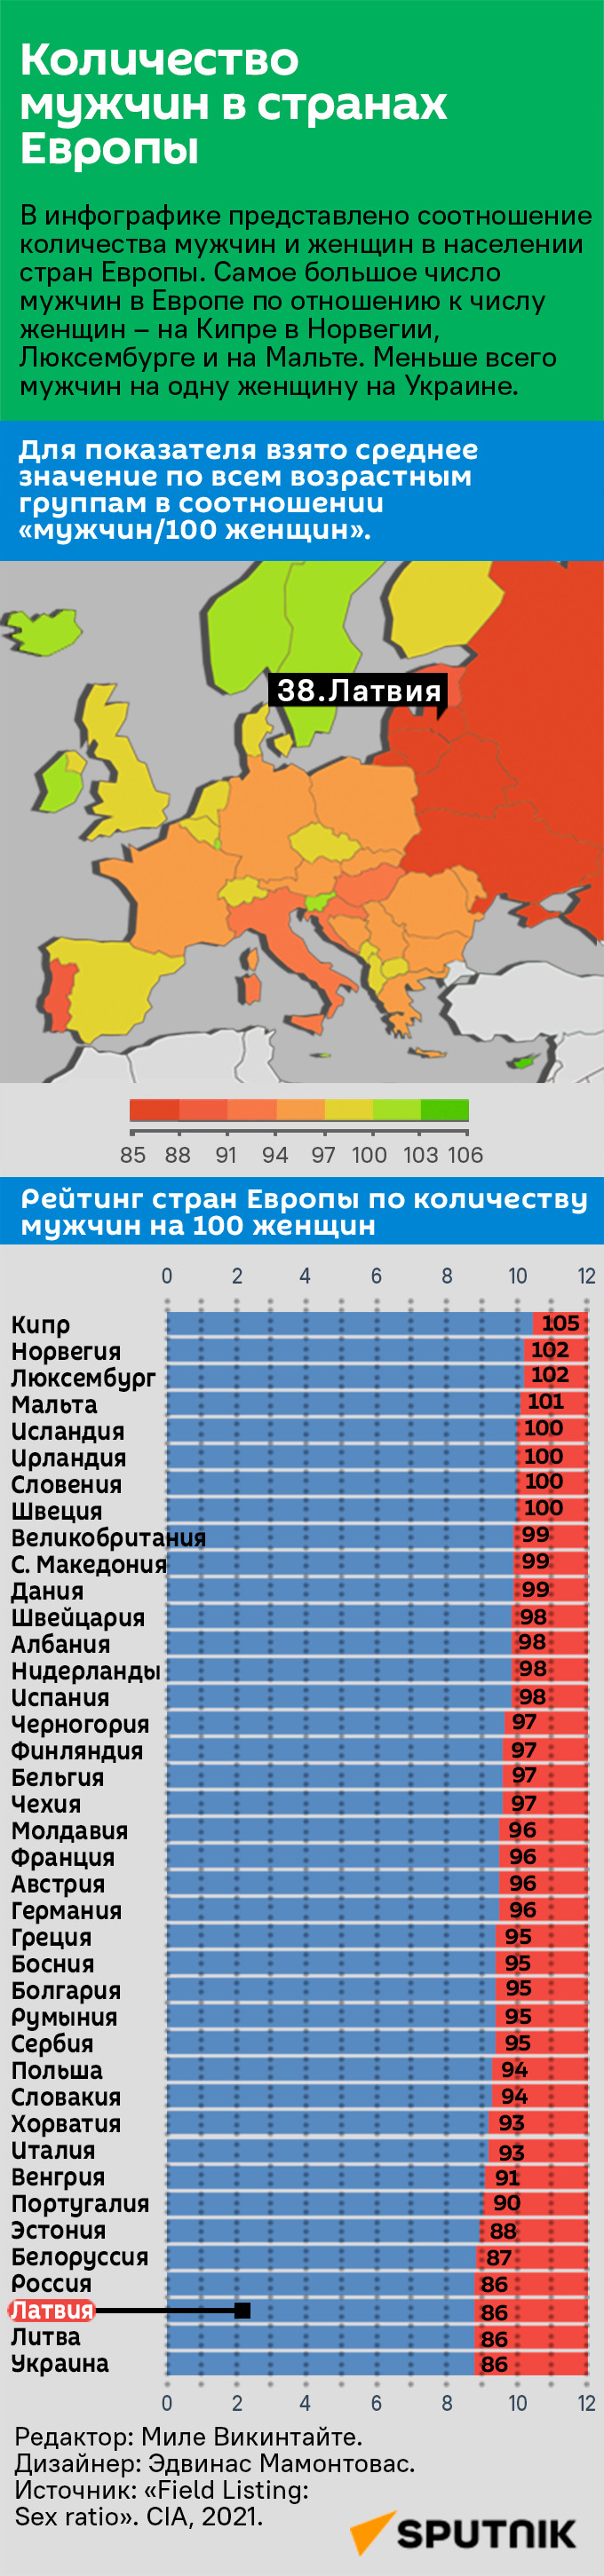 Количество мужчин в странах Европы - Sputnik Латвия